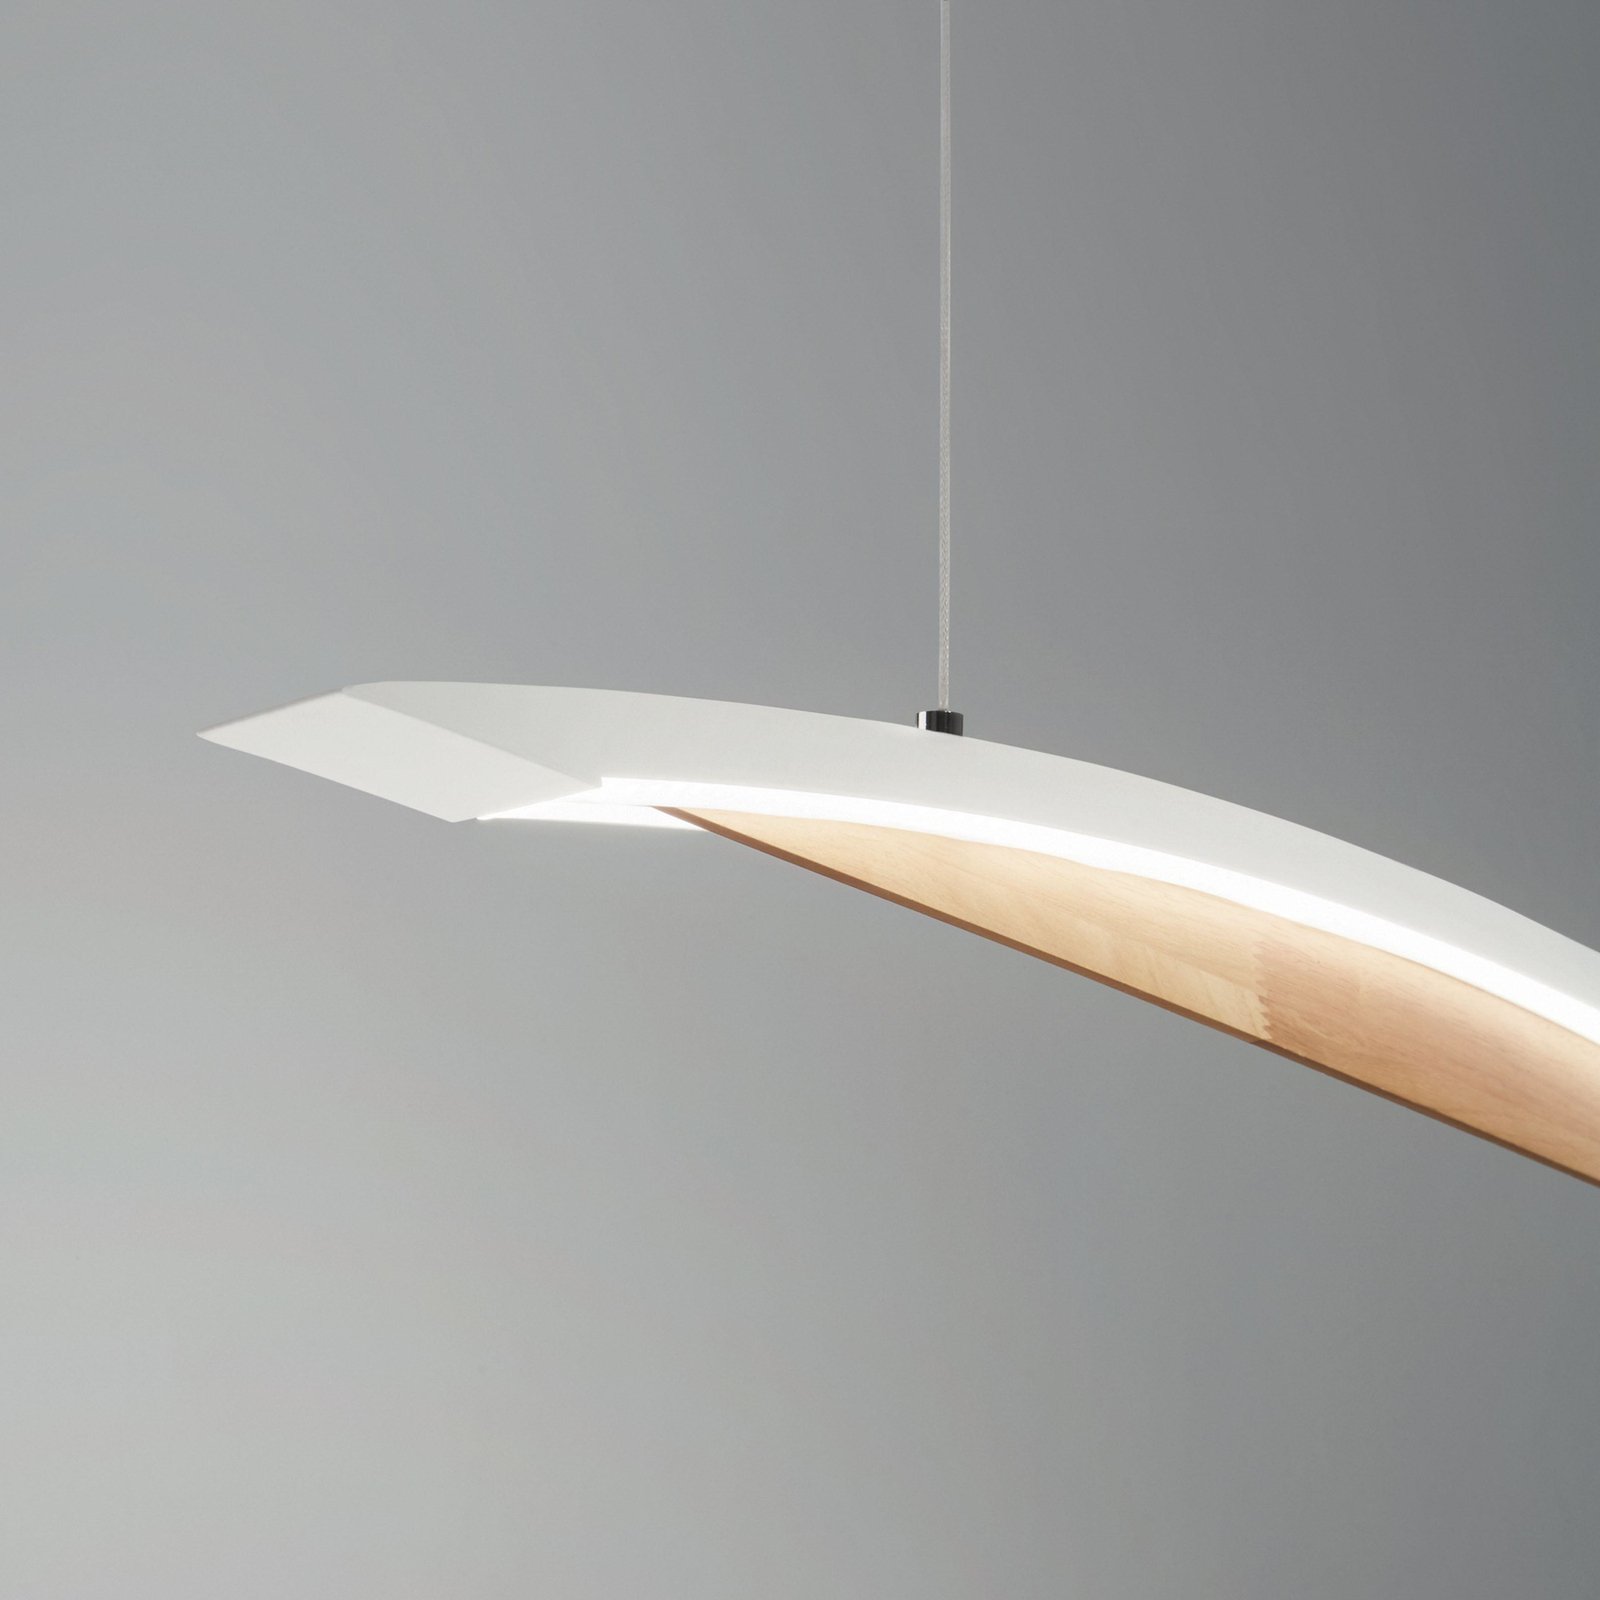 LED висящо осветително тяло Cordoba, дължина 110 cm, метал/дърво, с